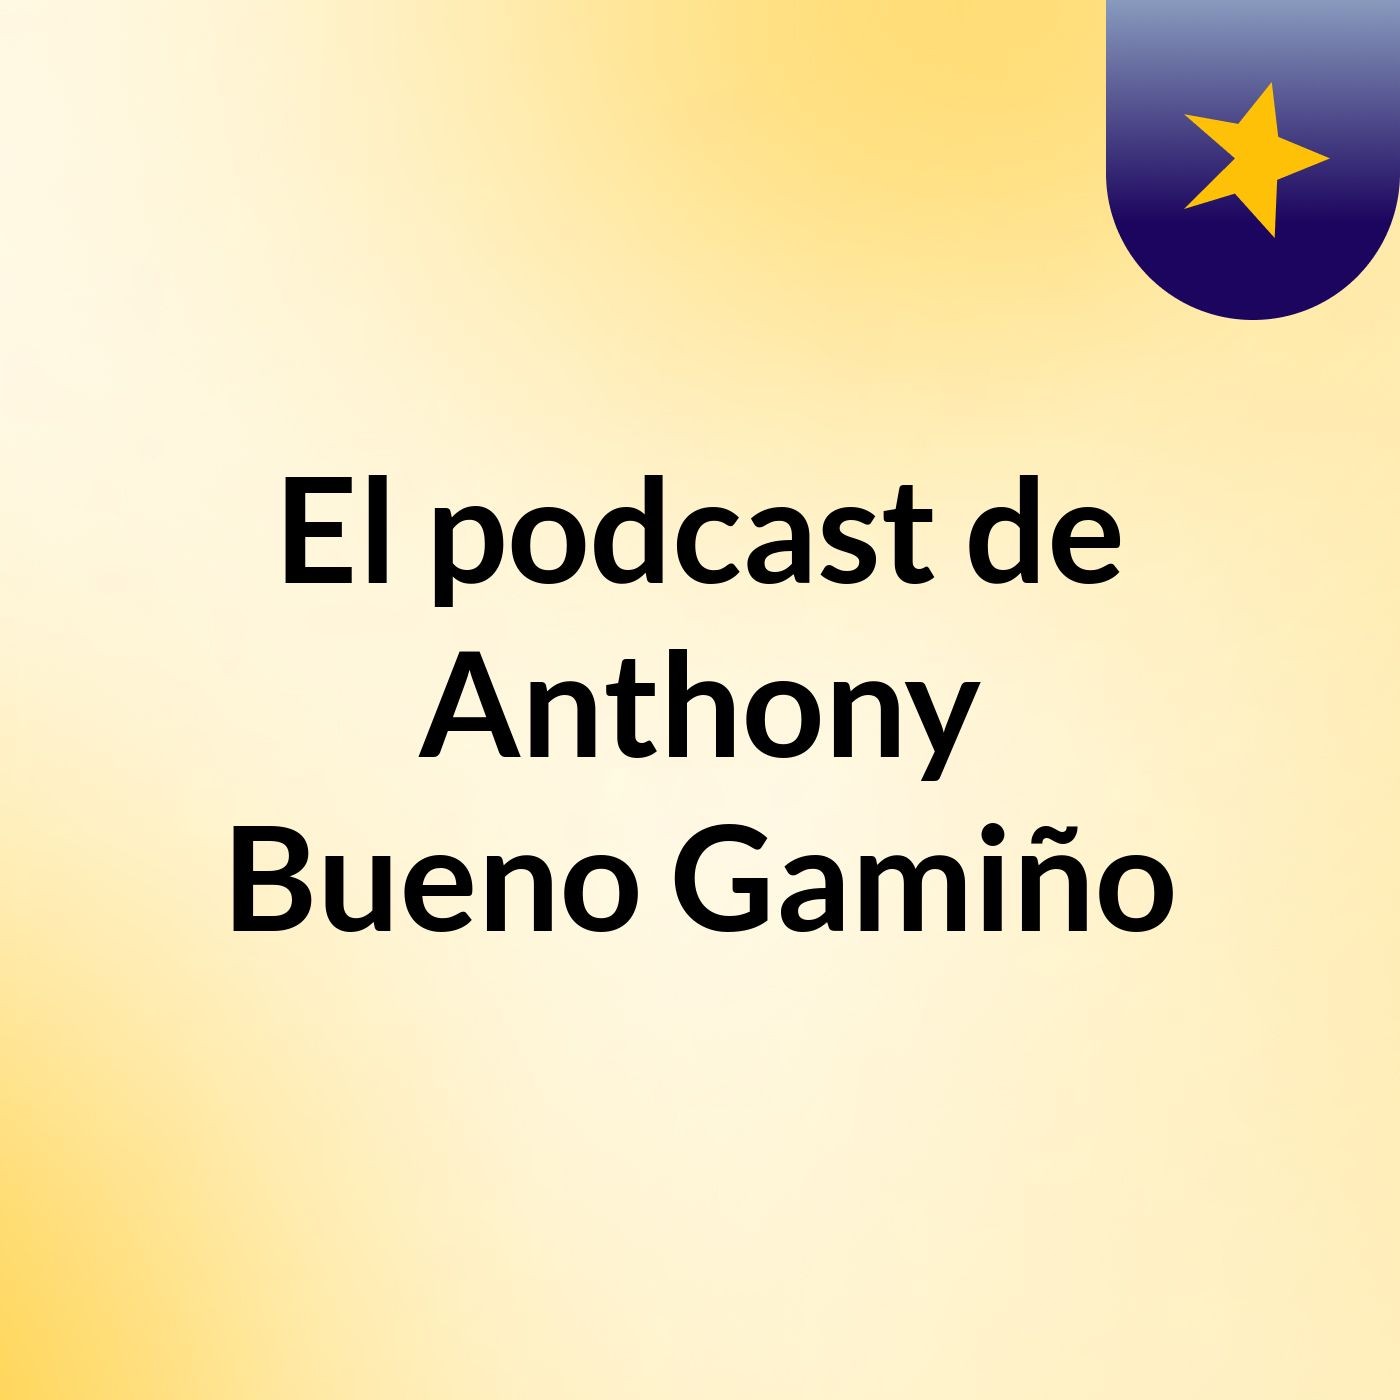 El podcast de Anthony Bueno Gamiño